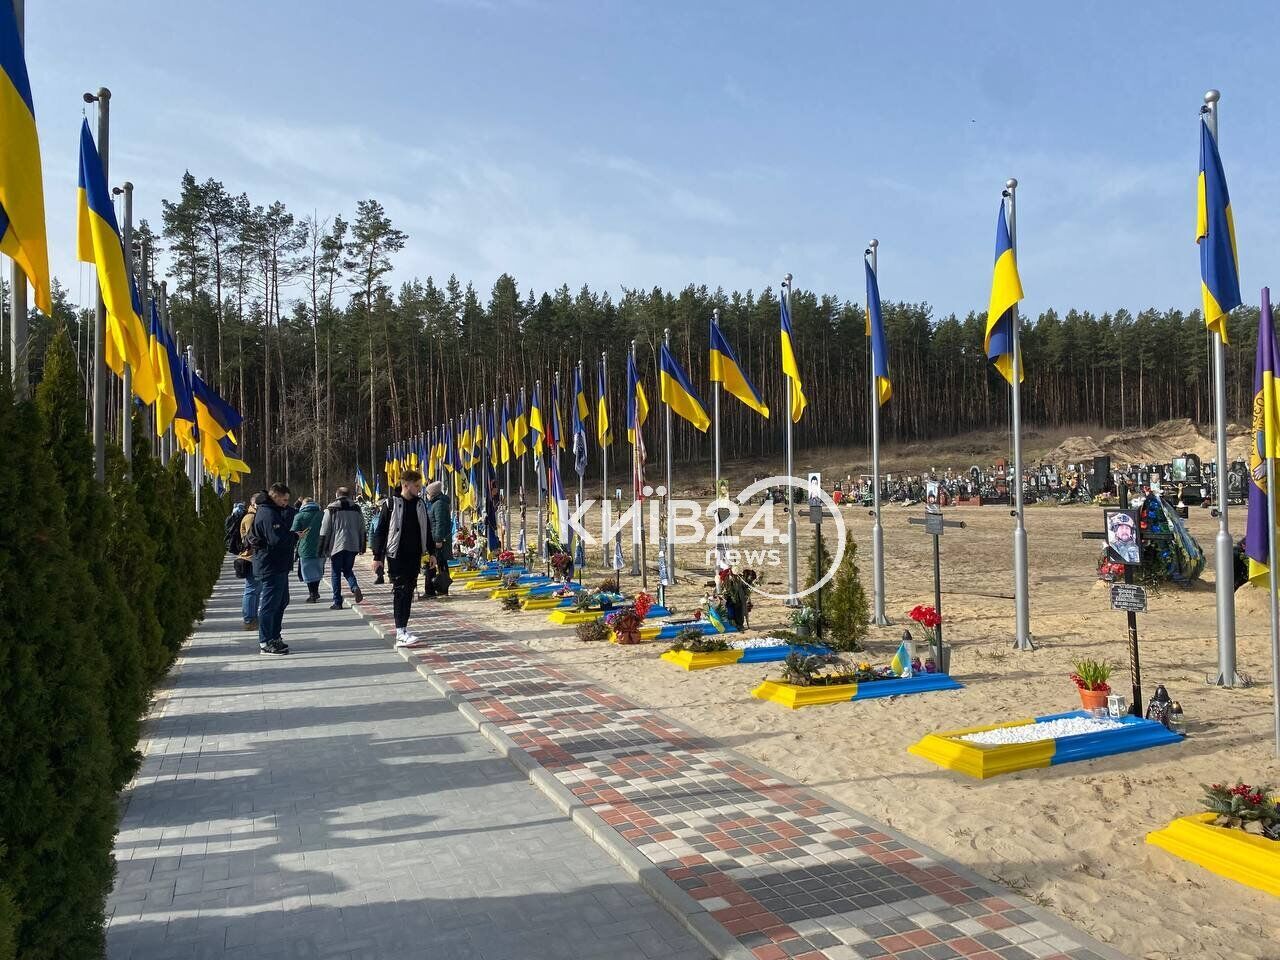 Вторая годовщина освобождения Ирпеня от оккупантов: в городе почтили память погибших украинских воинов. Фото и видео